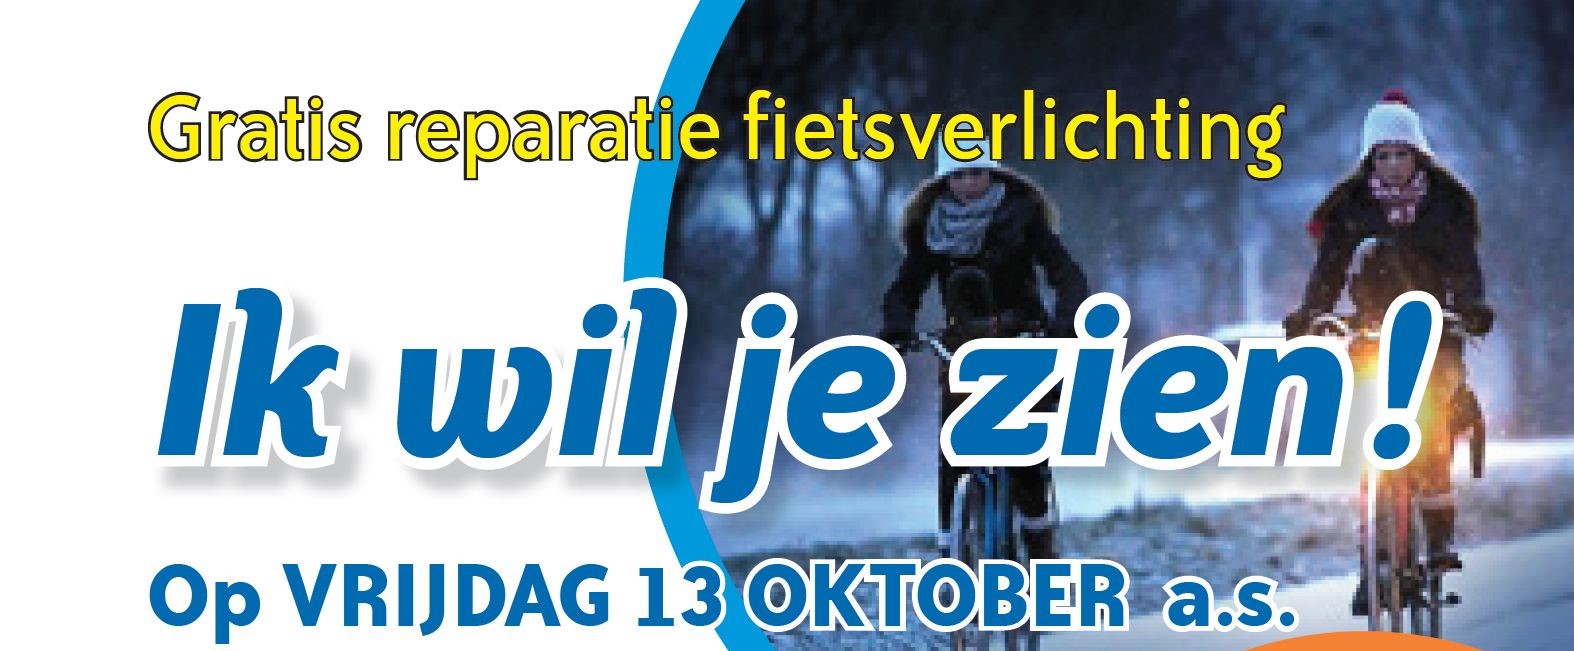  fietsverlichtingsactie 13 oktober 2017 Harderwijk